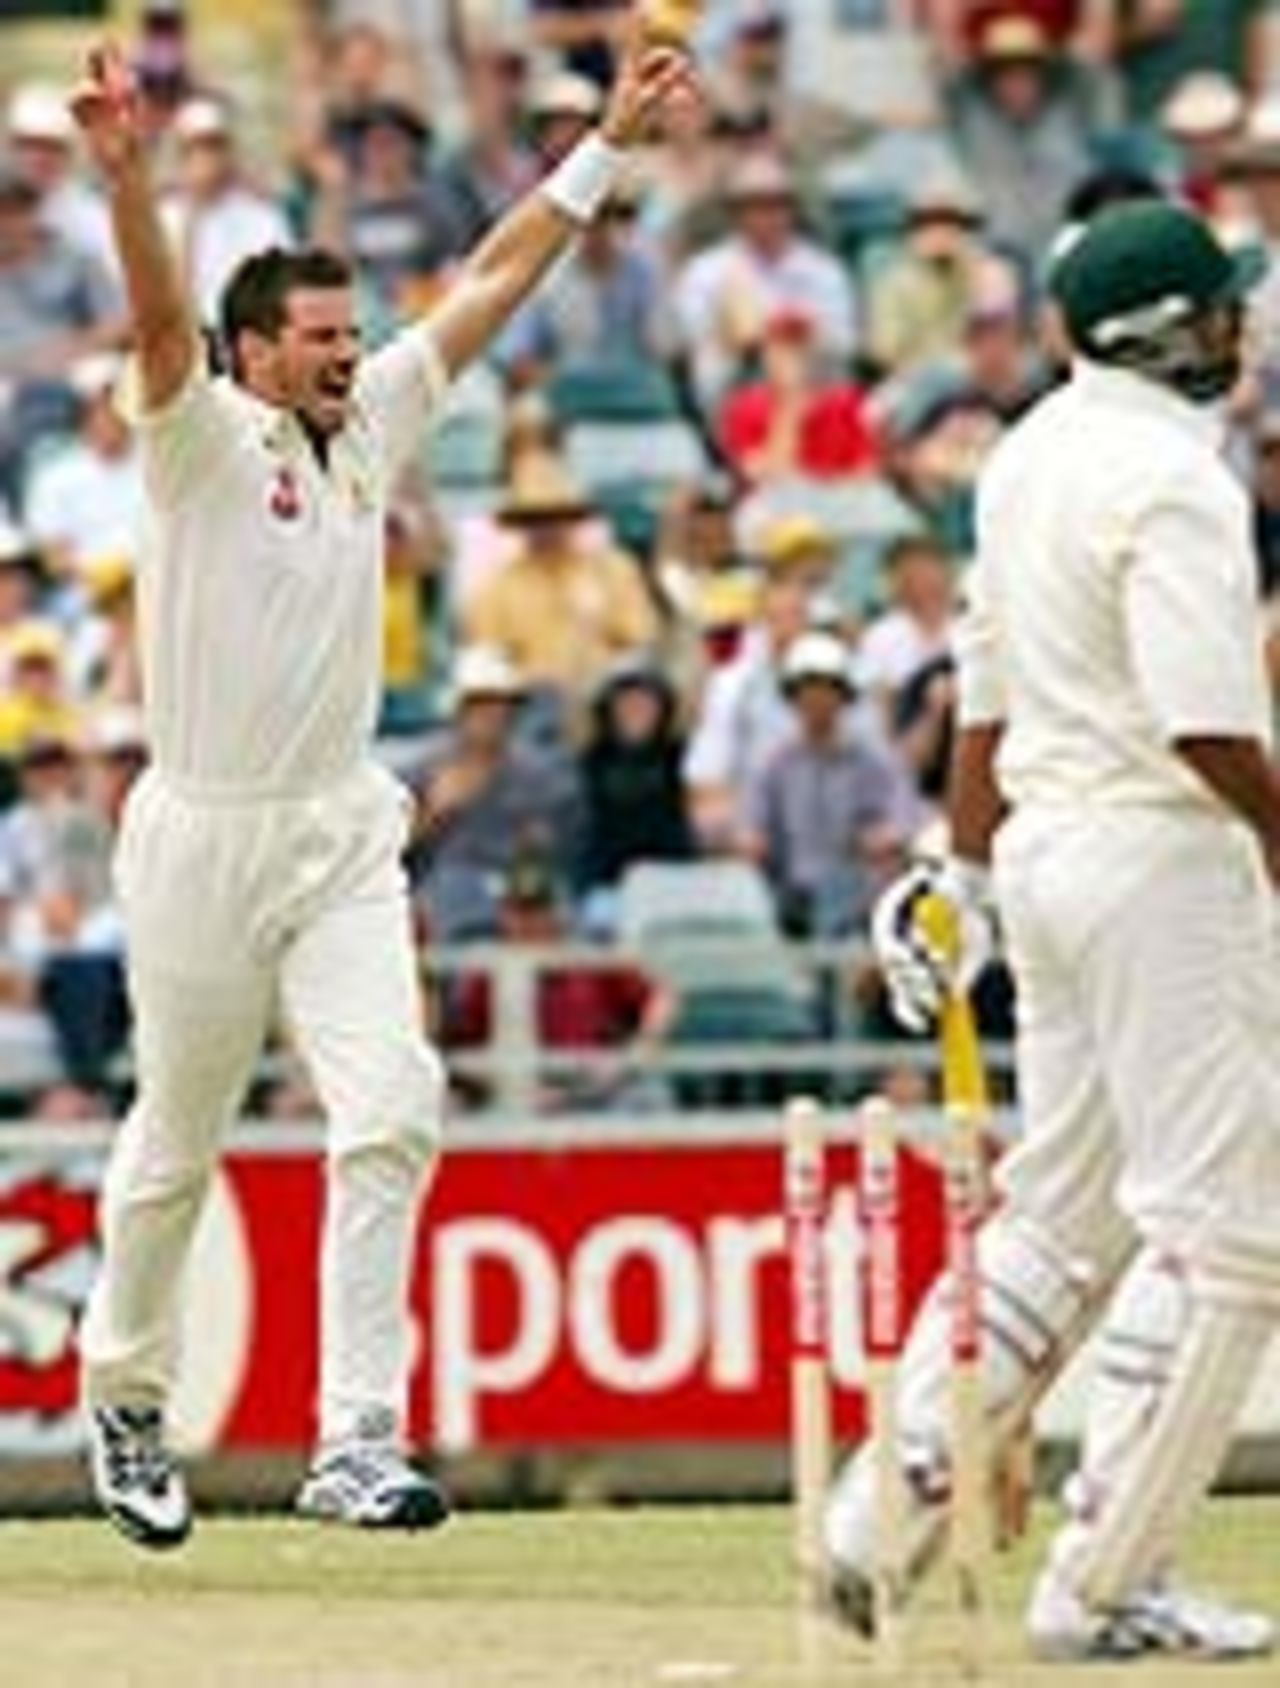 Michael Kasprowicz nails Inzamam-ul-Haq, Australia v Pakistan, 1st Test, Perth, December 17, 2004